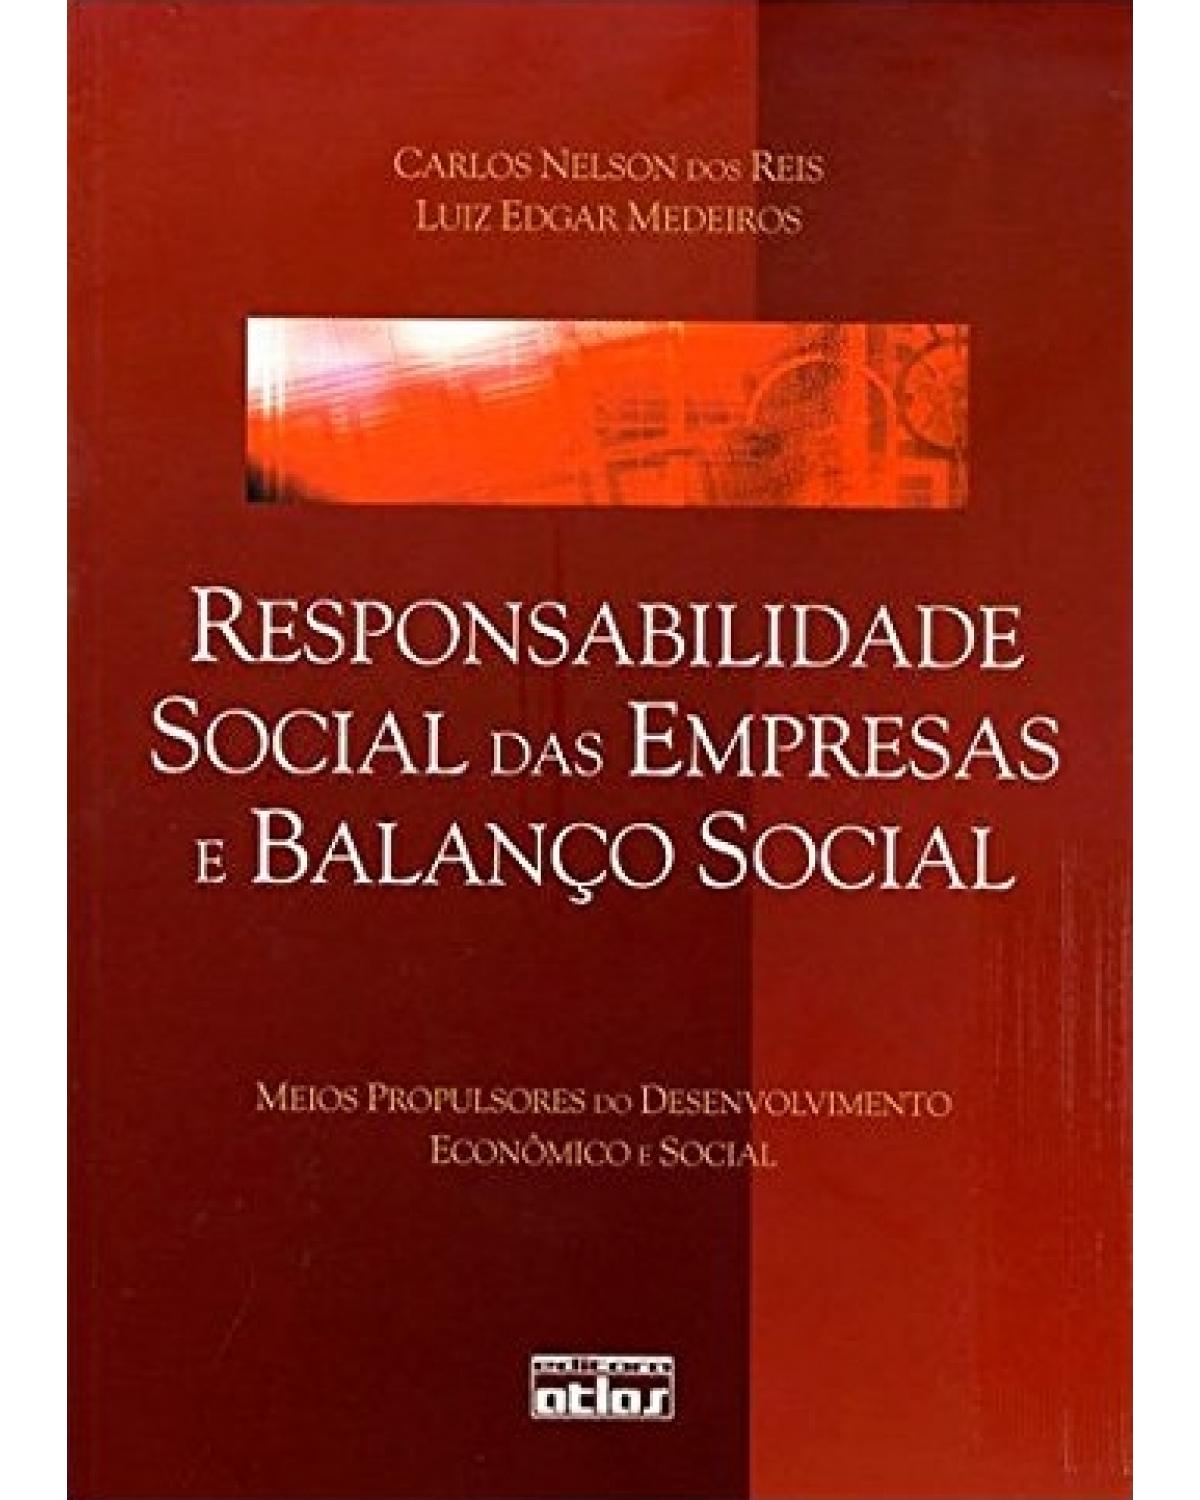 Responsabilidade social das empresas e balanço social - Meios propulsores de desenvolvimento econômico e social - 1ª Edição | 2007